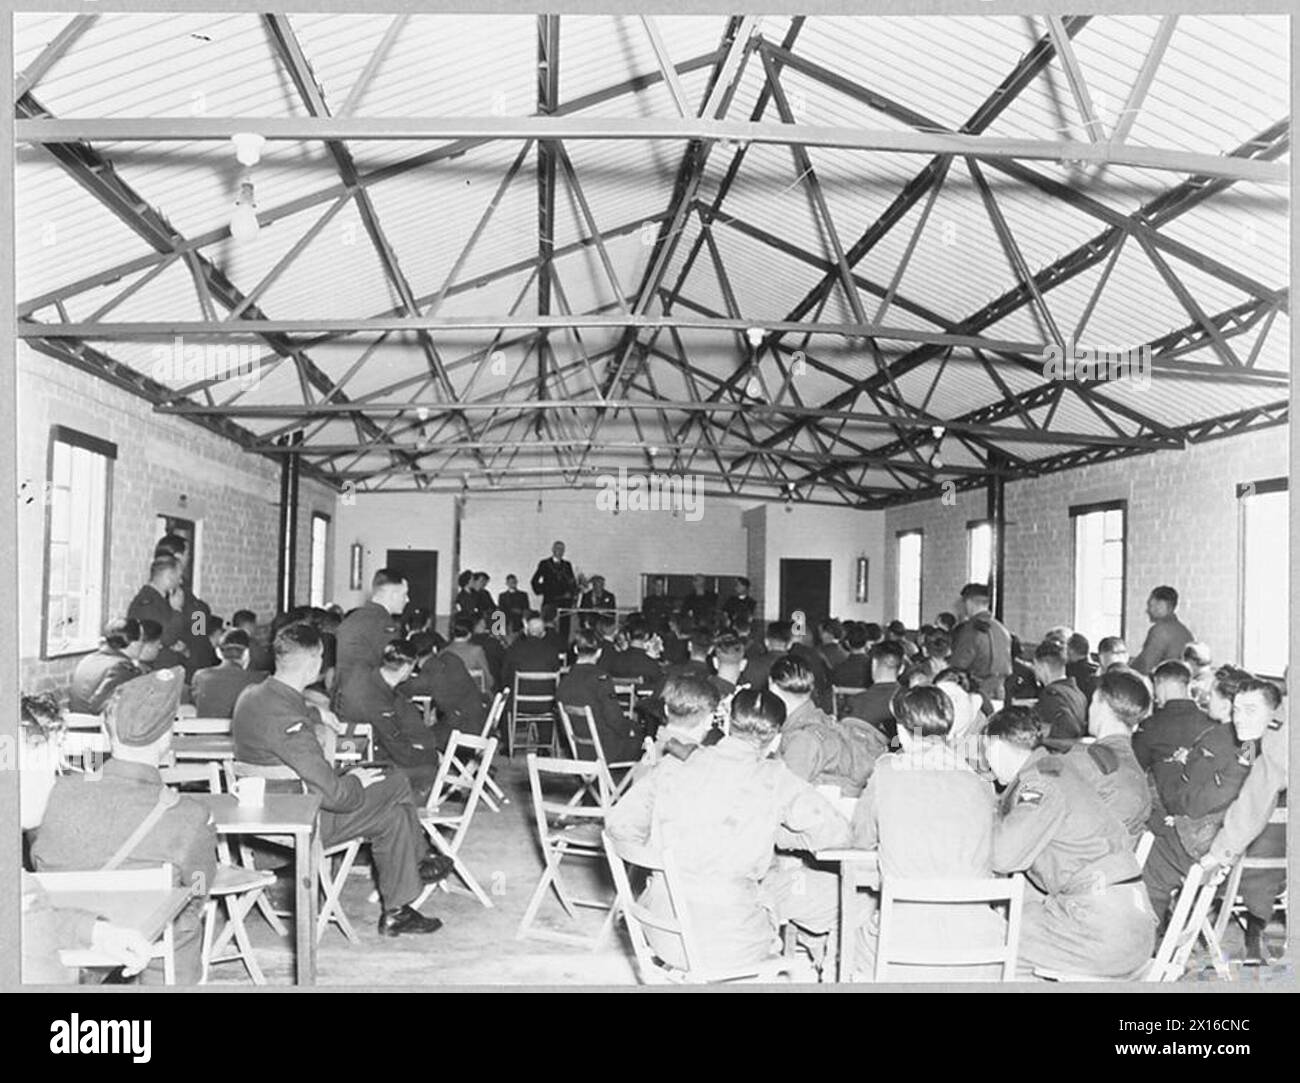 SPENBOROUGH PRESENTA LA CAPANNA Y.M.C.A. ALLA STAZIONE R.A.F. - 10646. Picture (pubblicato nel 1943) mostra - la capanna Y.M.C.A. durante la cerimonia di apertura della Royal Air Force Foto Stock